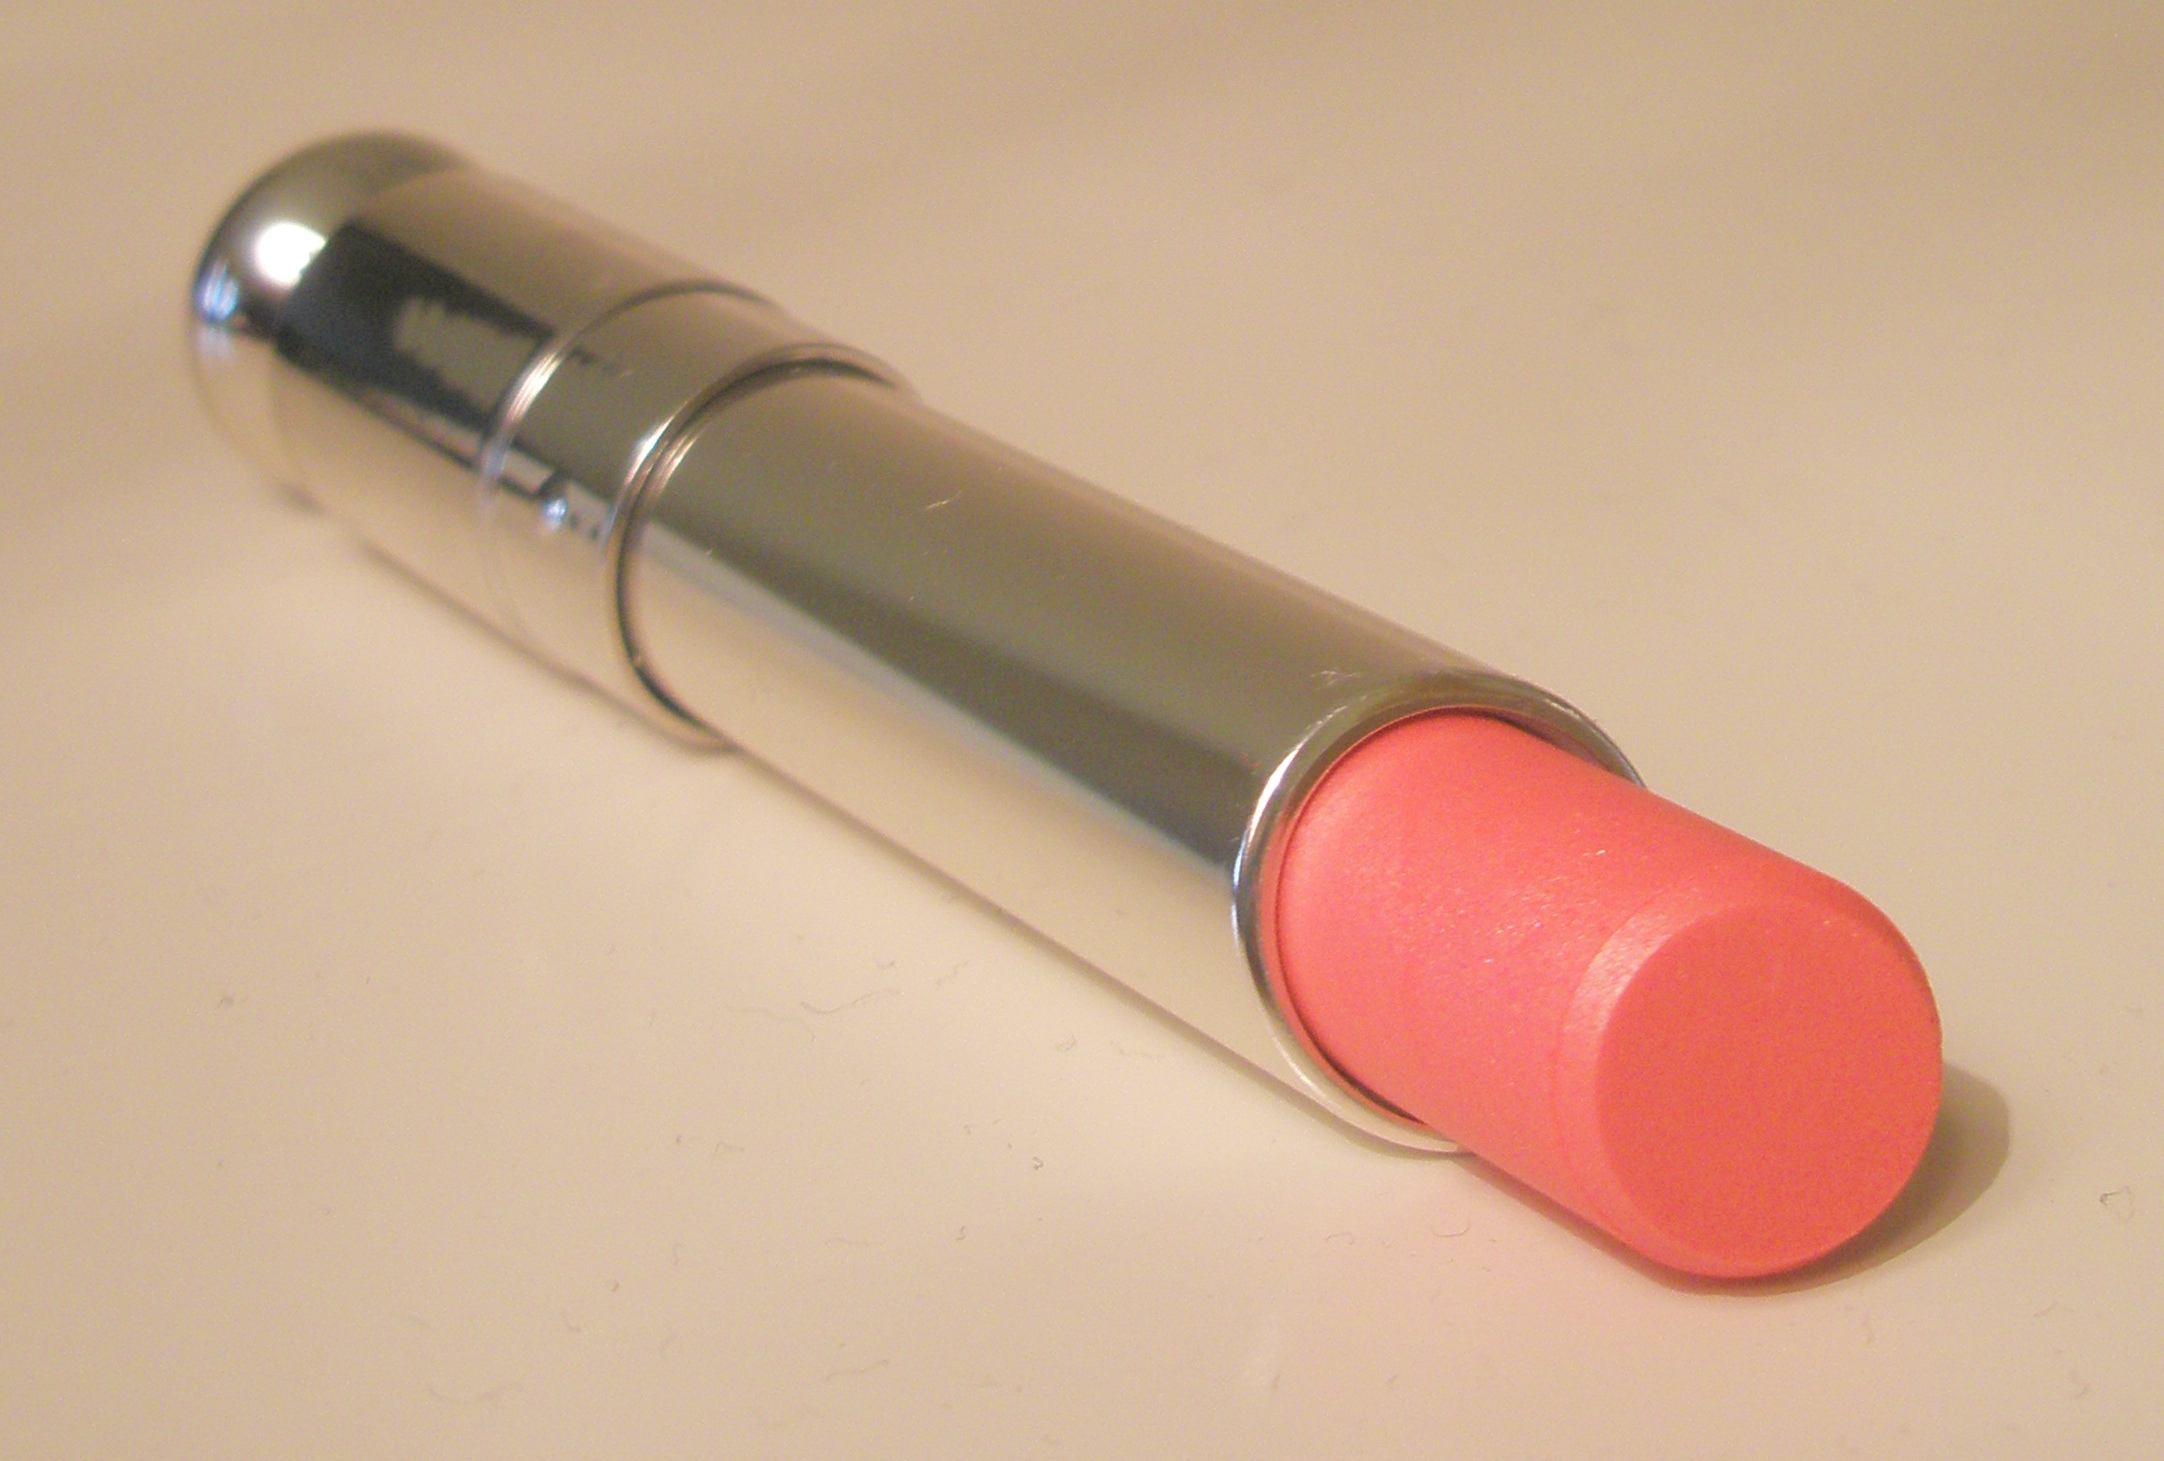 dior peach lipstick